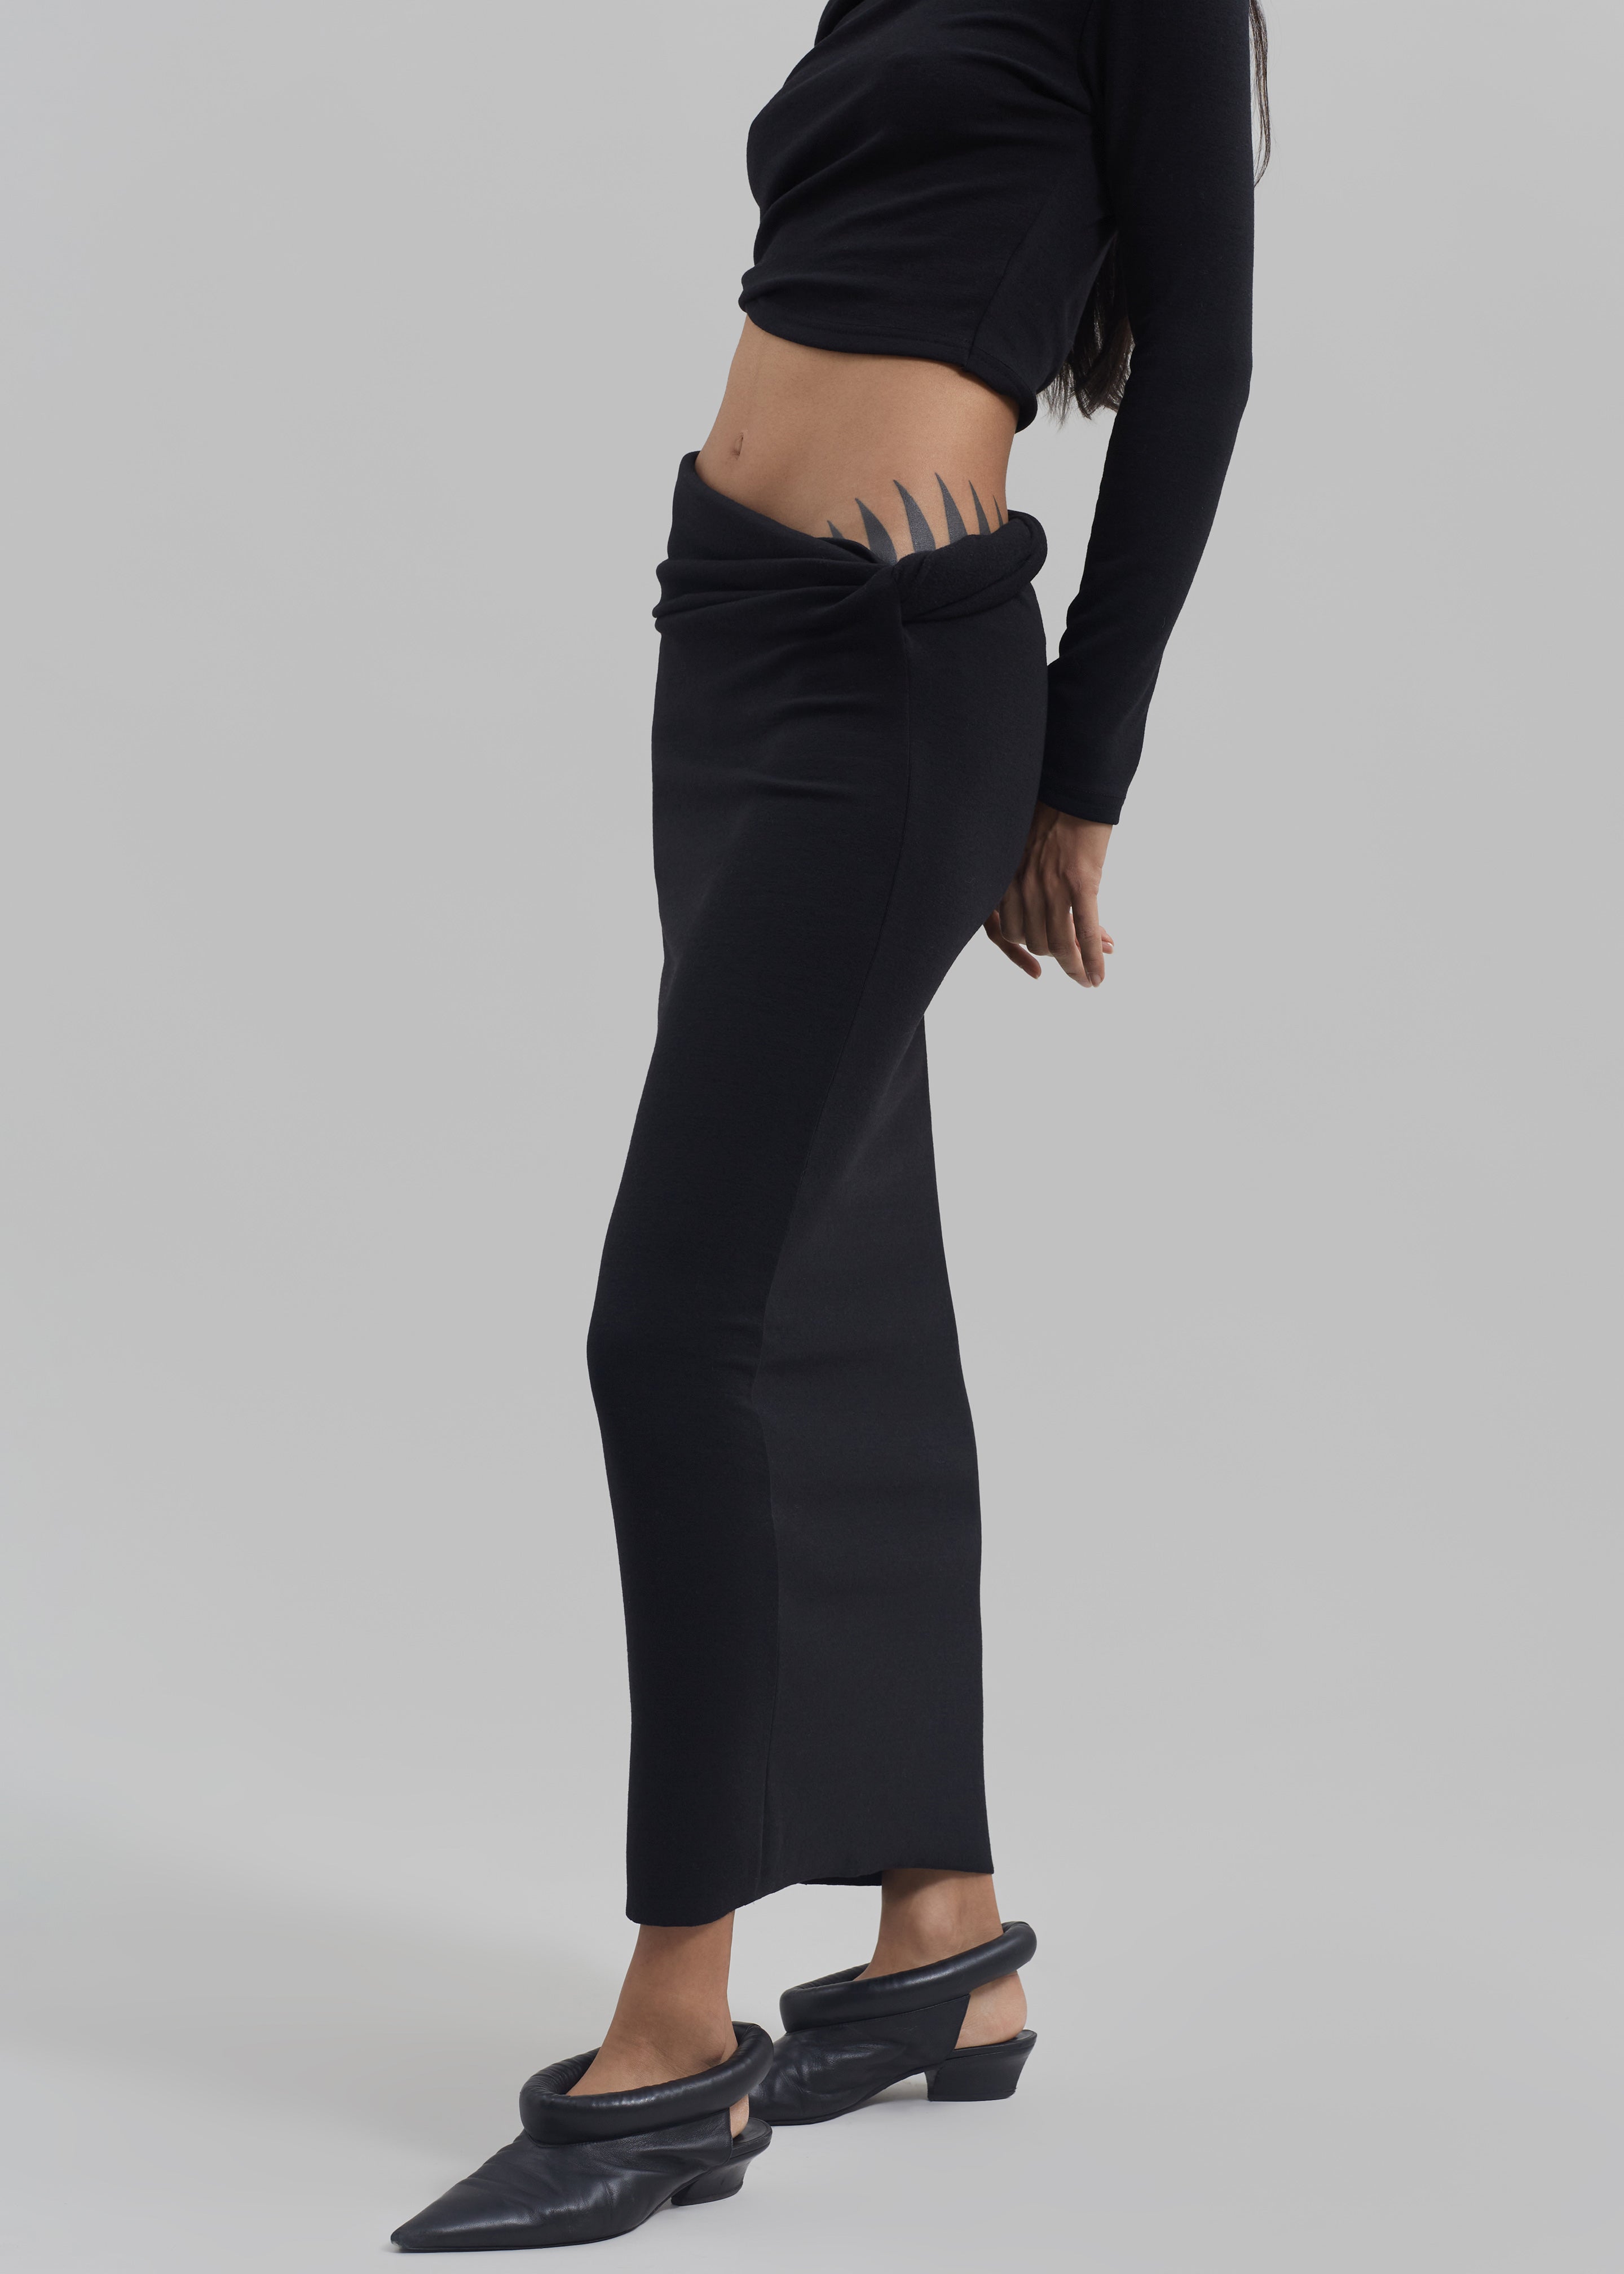 Margot Asymmetric Skirt - Black - 2